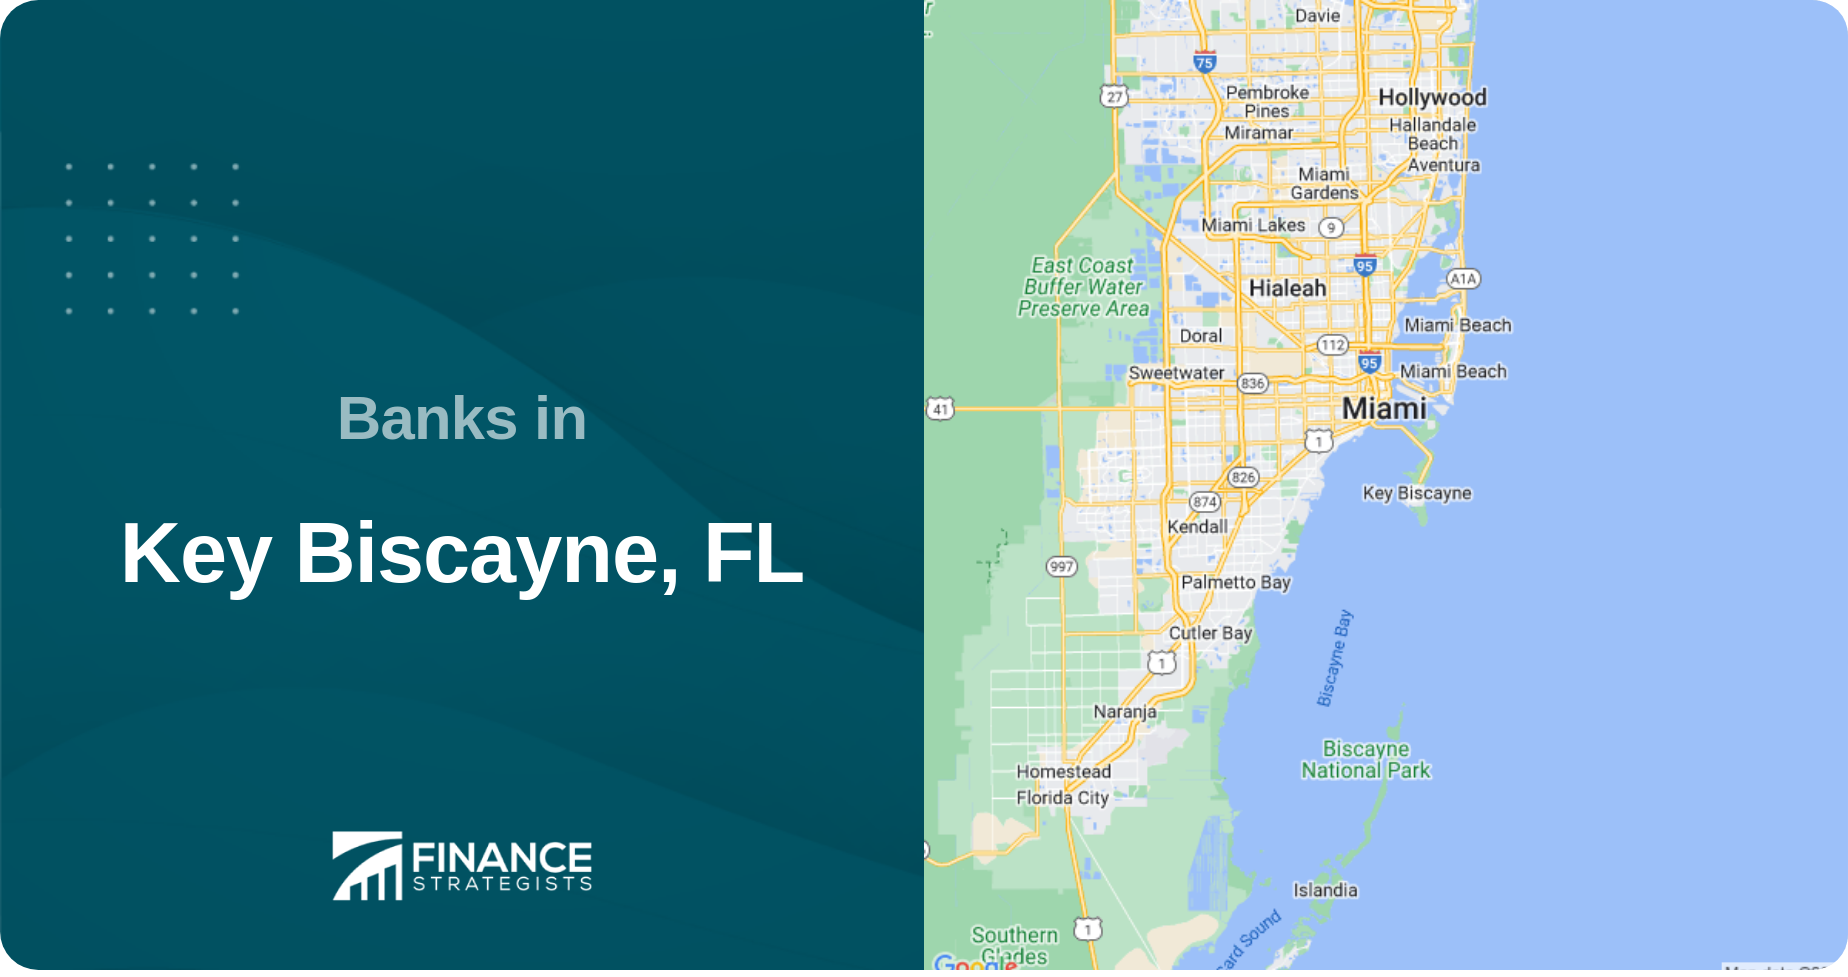 Banks in Key Biscayne, FL